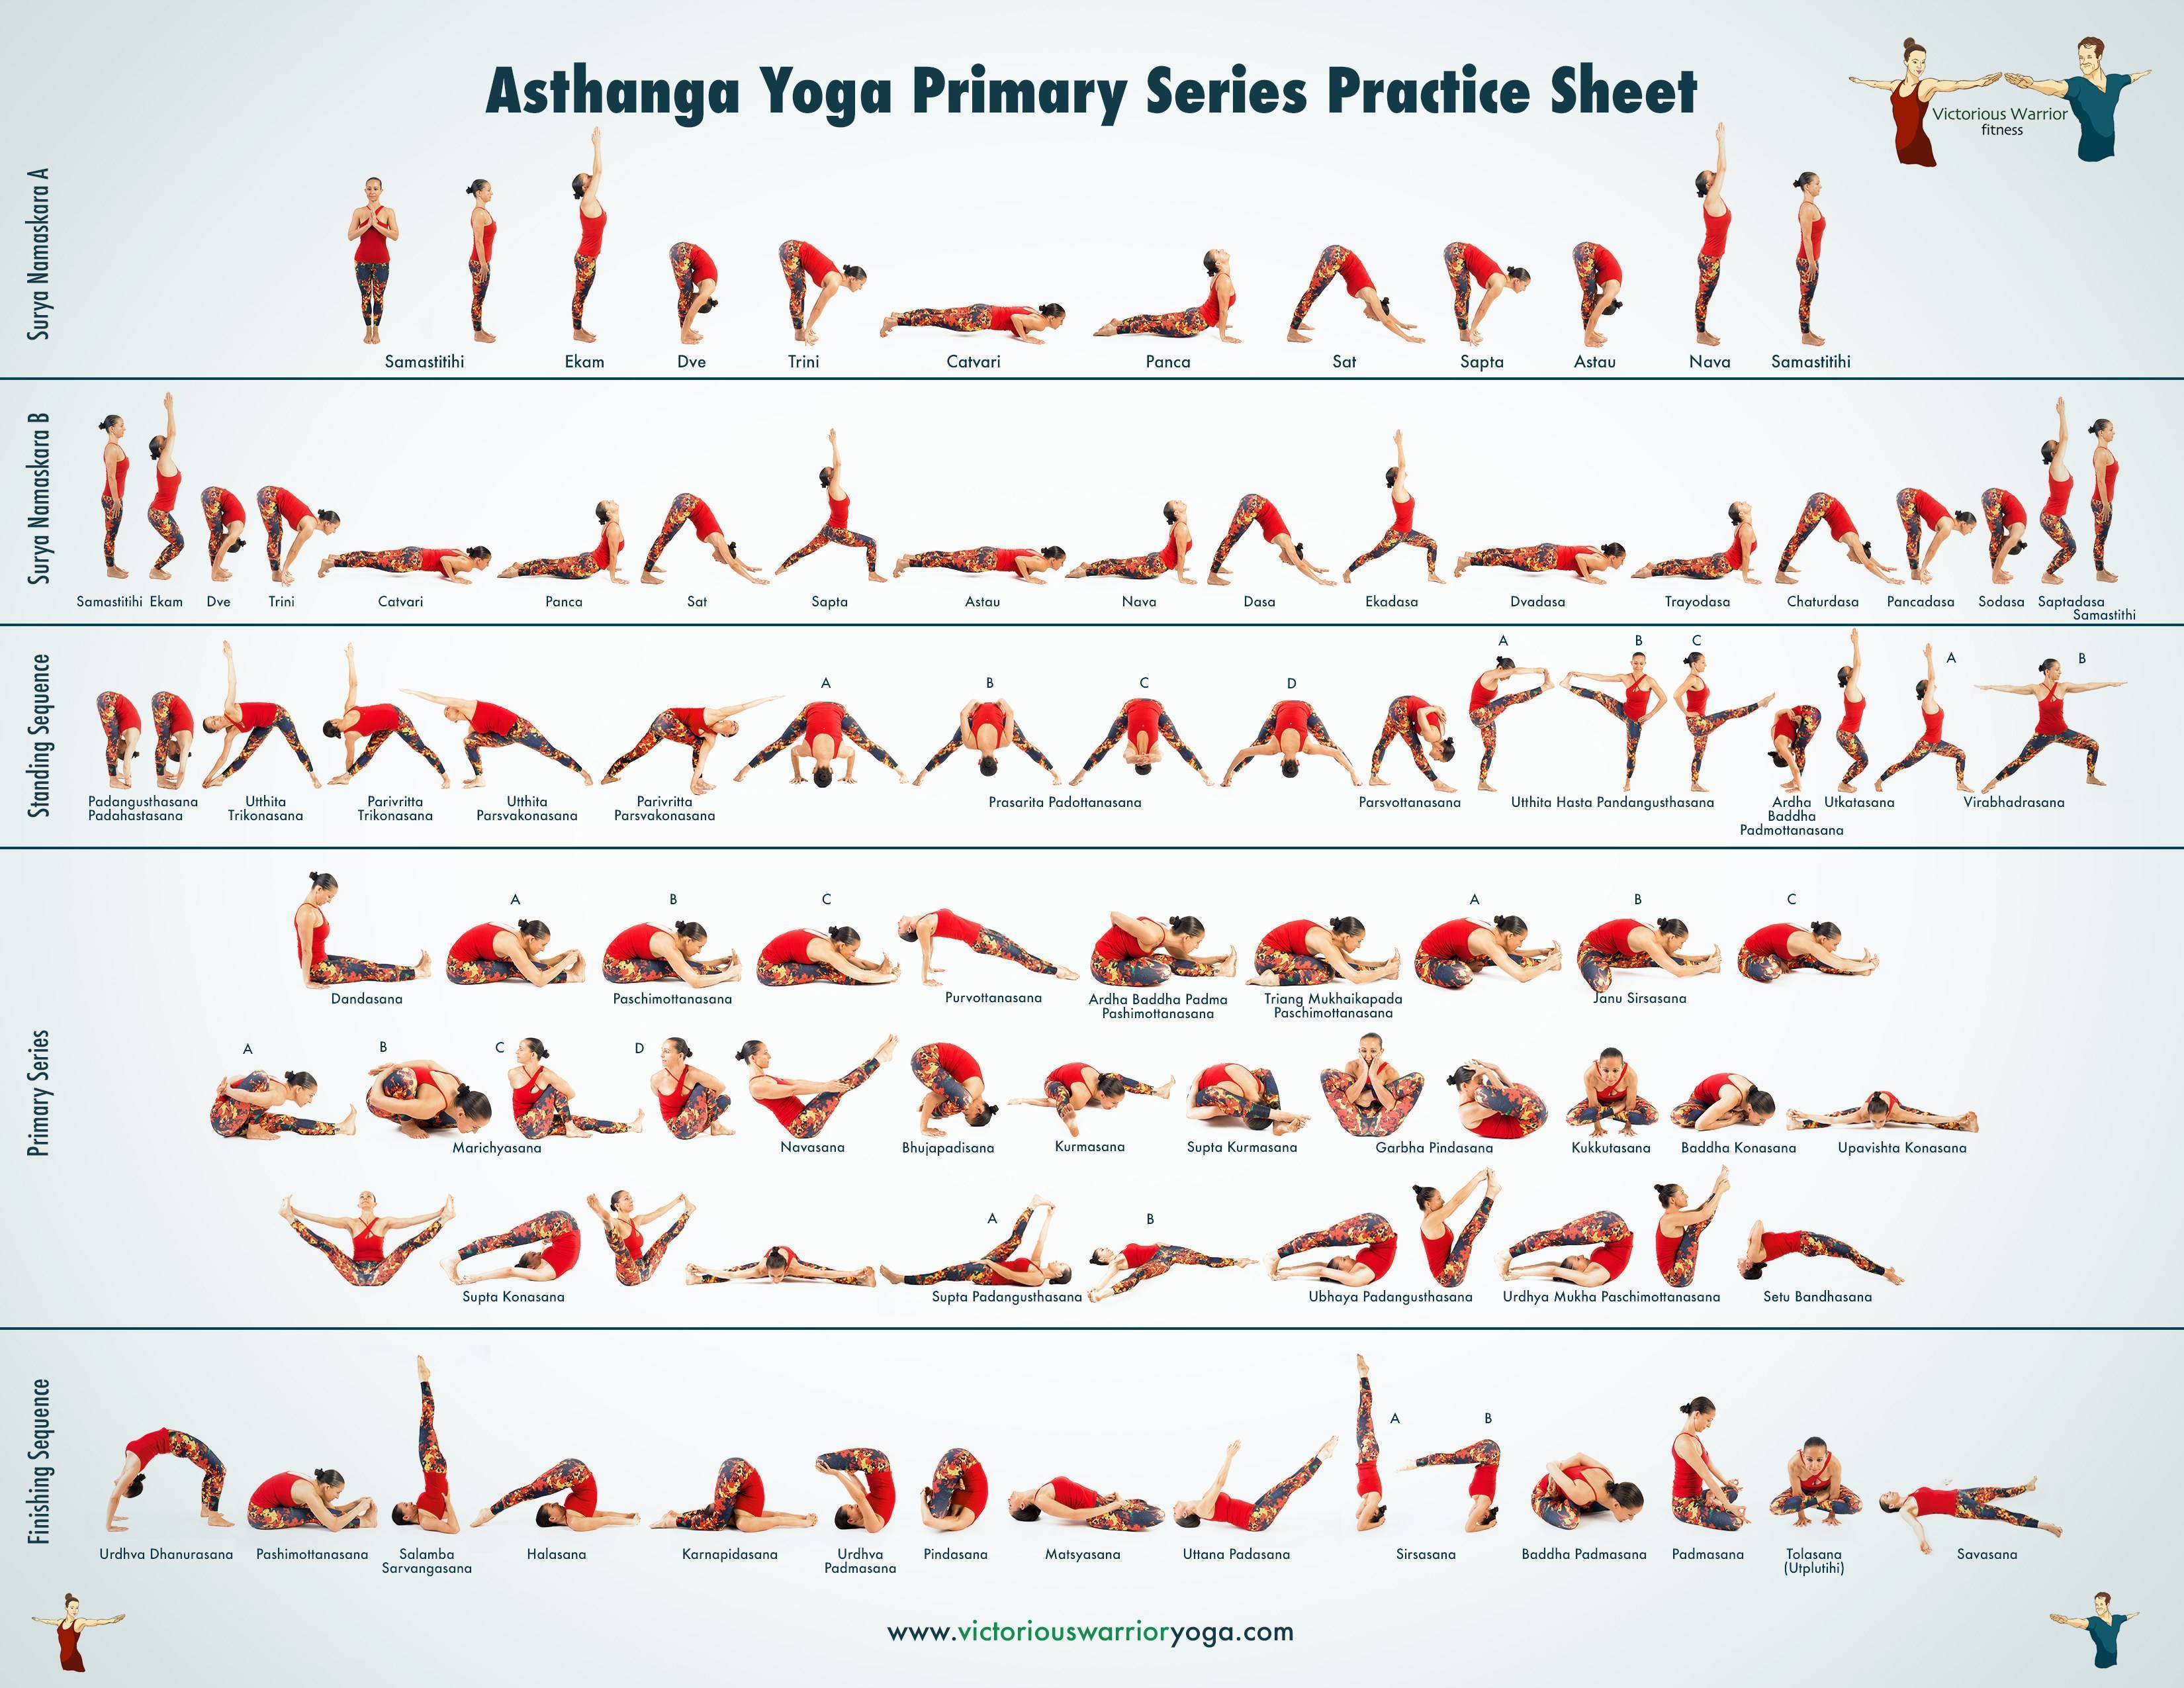 Аштанга йога для начинающих: с чего начать и как выполнять упражнения правильно (95 фото)